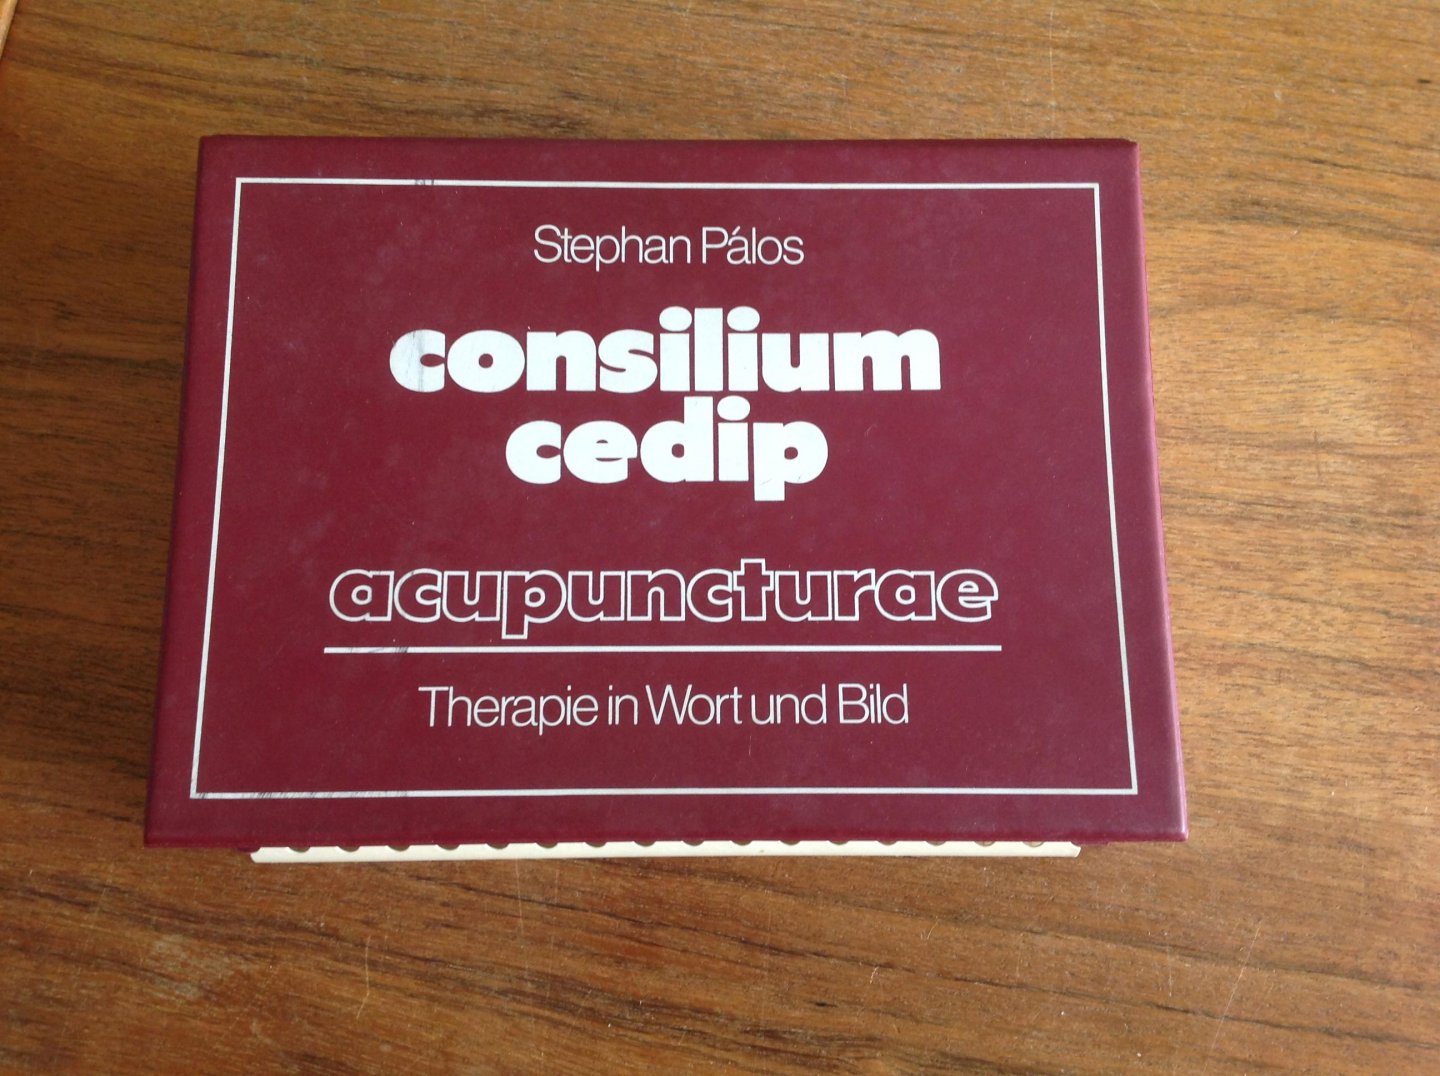 Palos S - Consilium cedip acupuncturae (therapie in wort und bild)  Chinesische ohr akupunktur